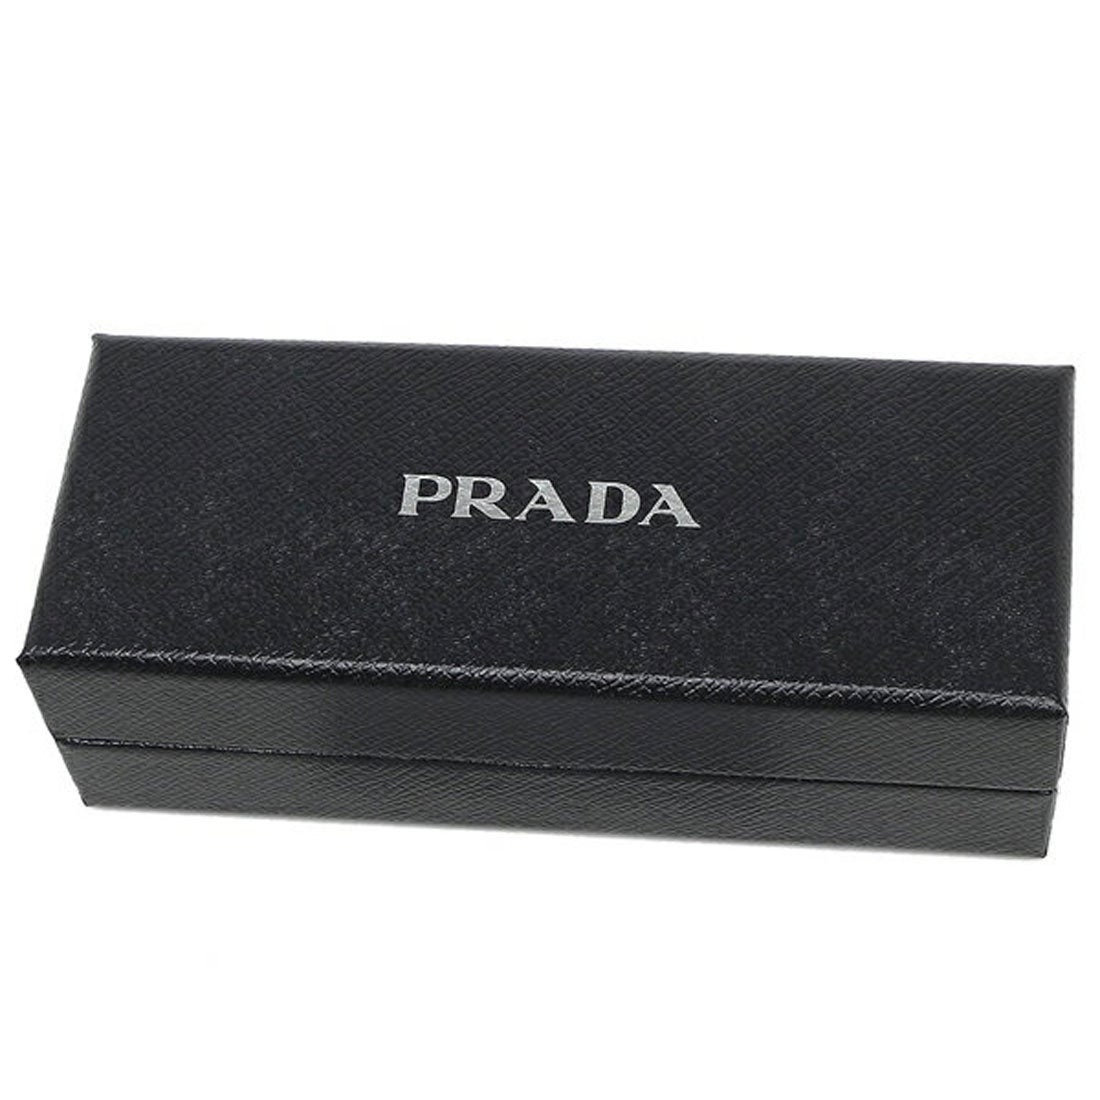 プラダ PRADA キーリング 2PP709 ブラック メンズ レディース